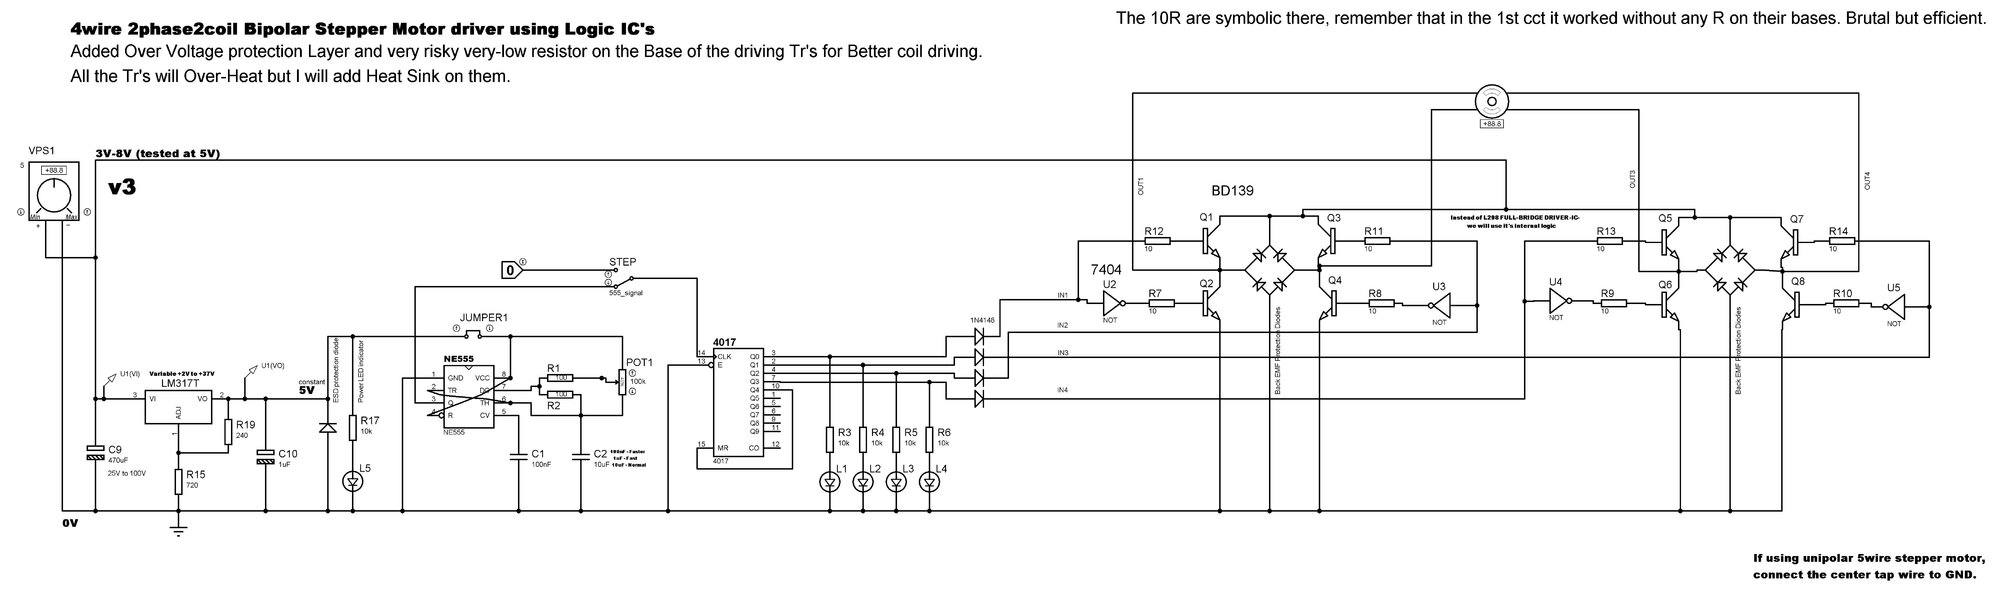 4wire 2phase2coil Stepper Motor logic circuit v3.jpg